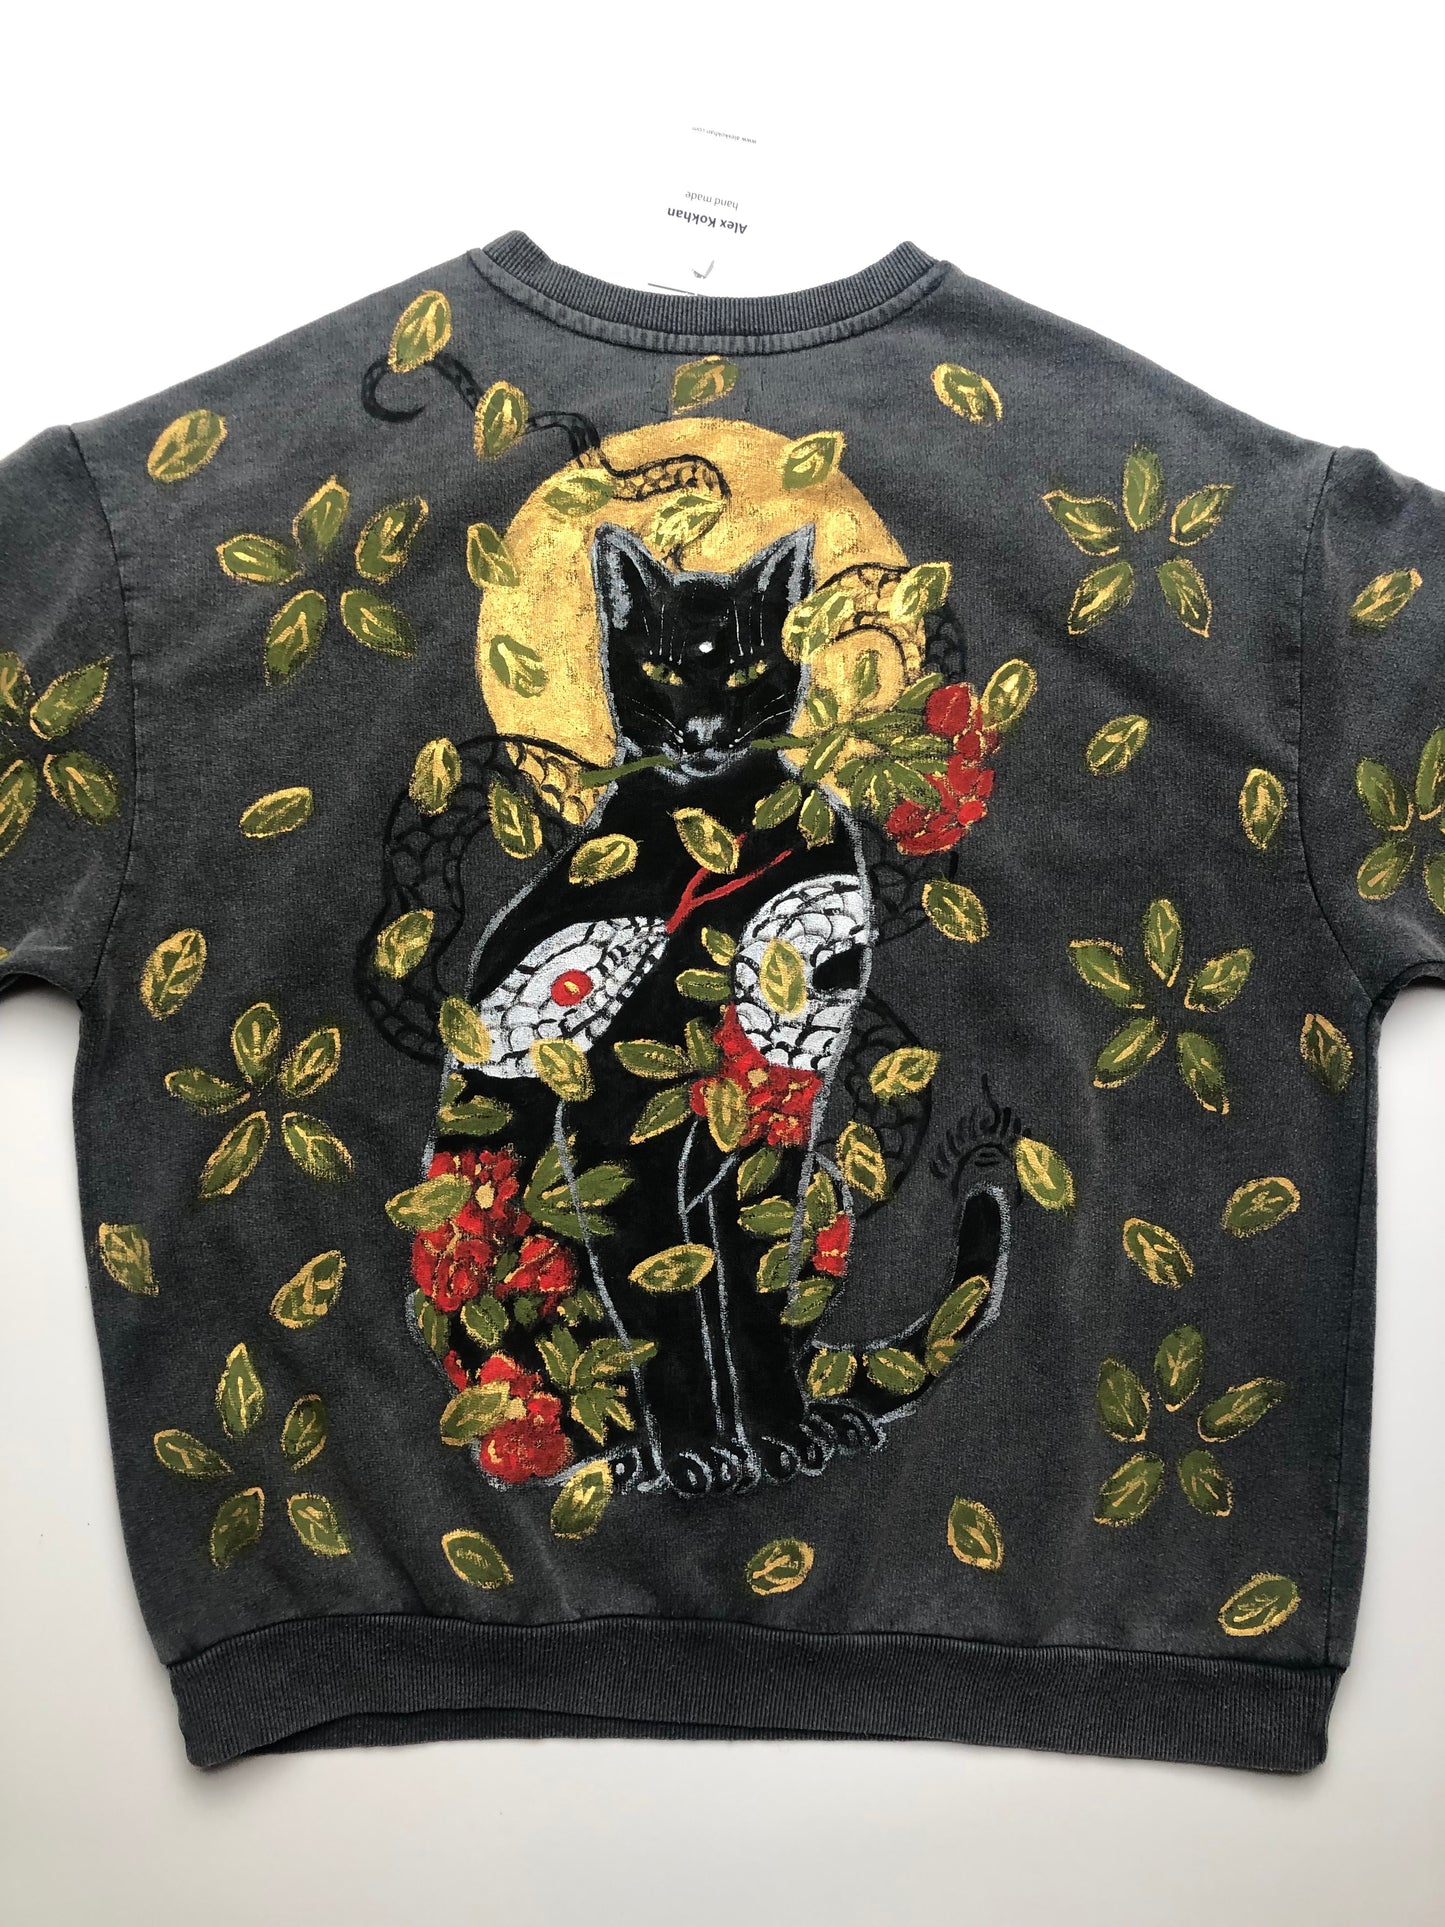 Women's sweatshirt oversized cat and elephants pattern details reverse side